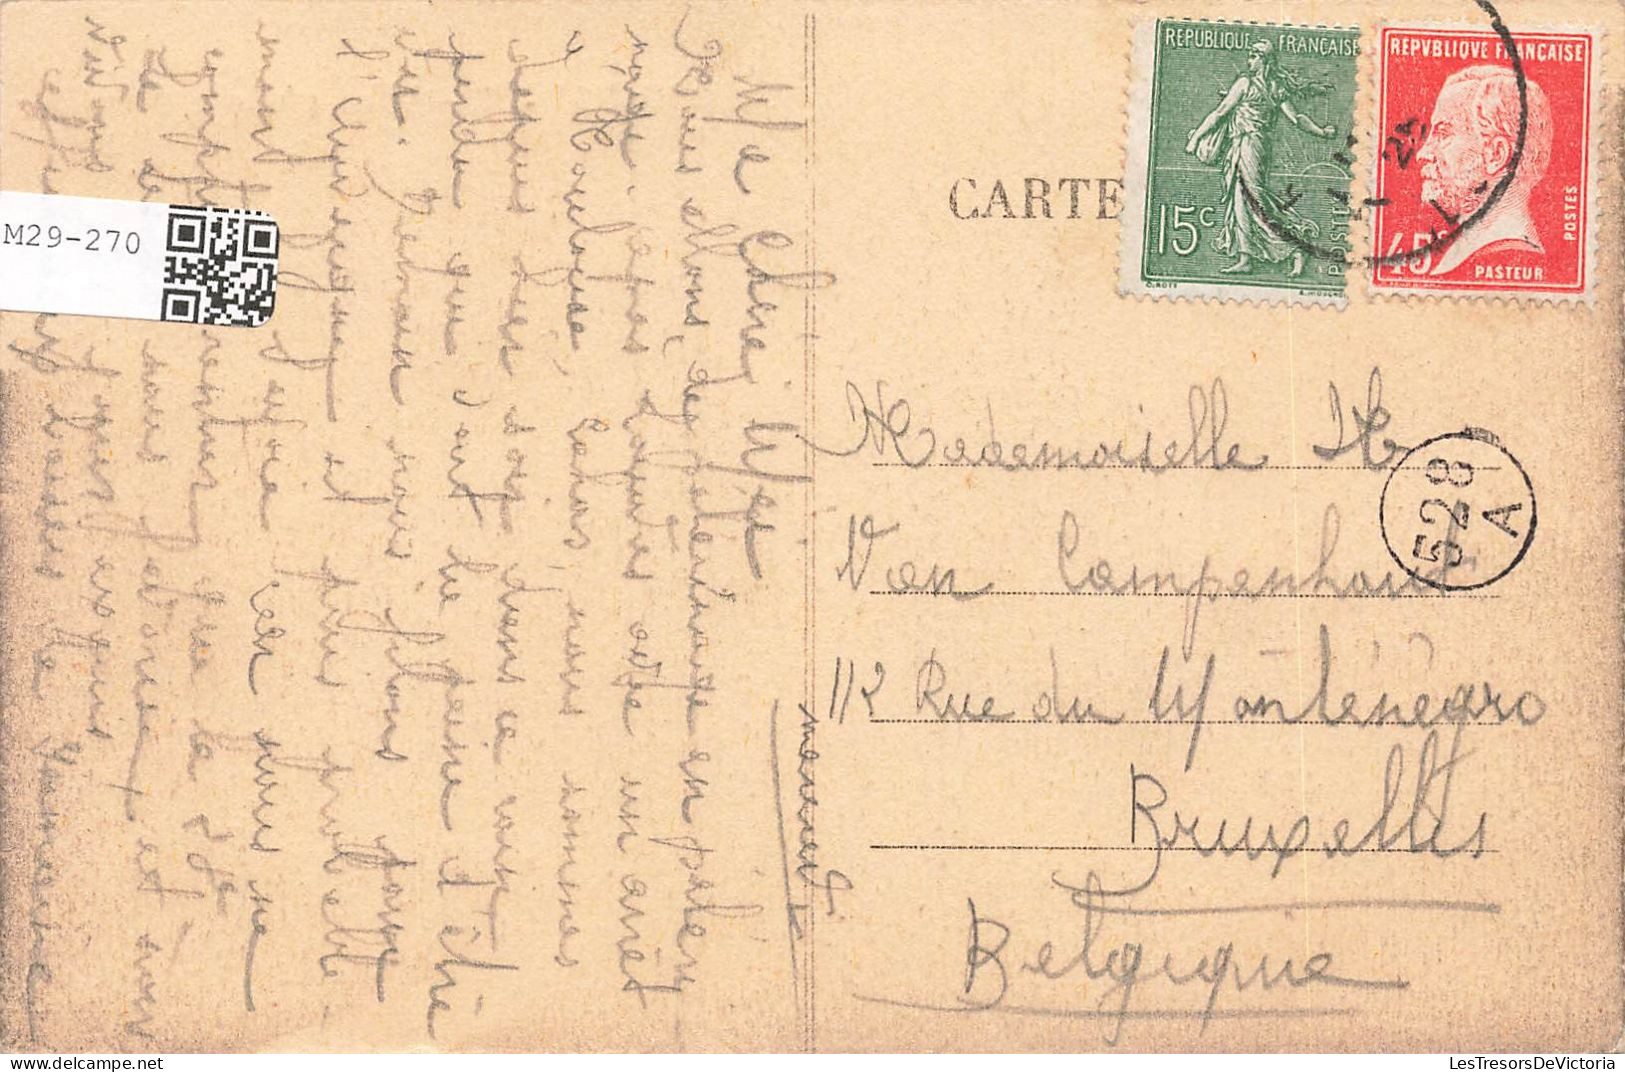 FRANCE - Rocamadour - Vue Générale (Ouest) - Carte Postale Ancienne - Rocamadour